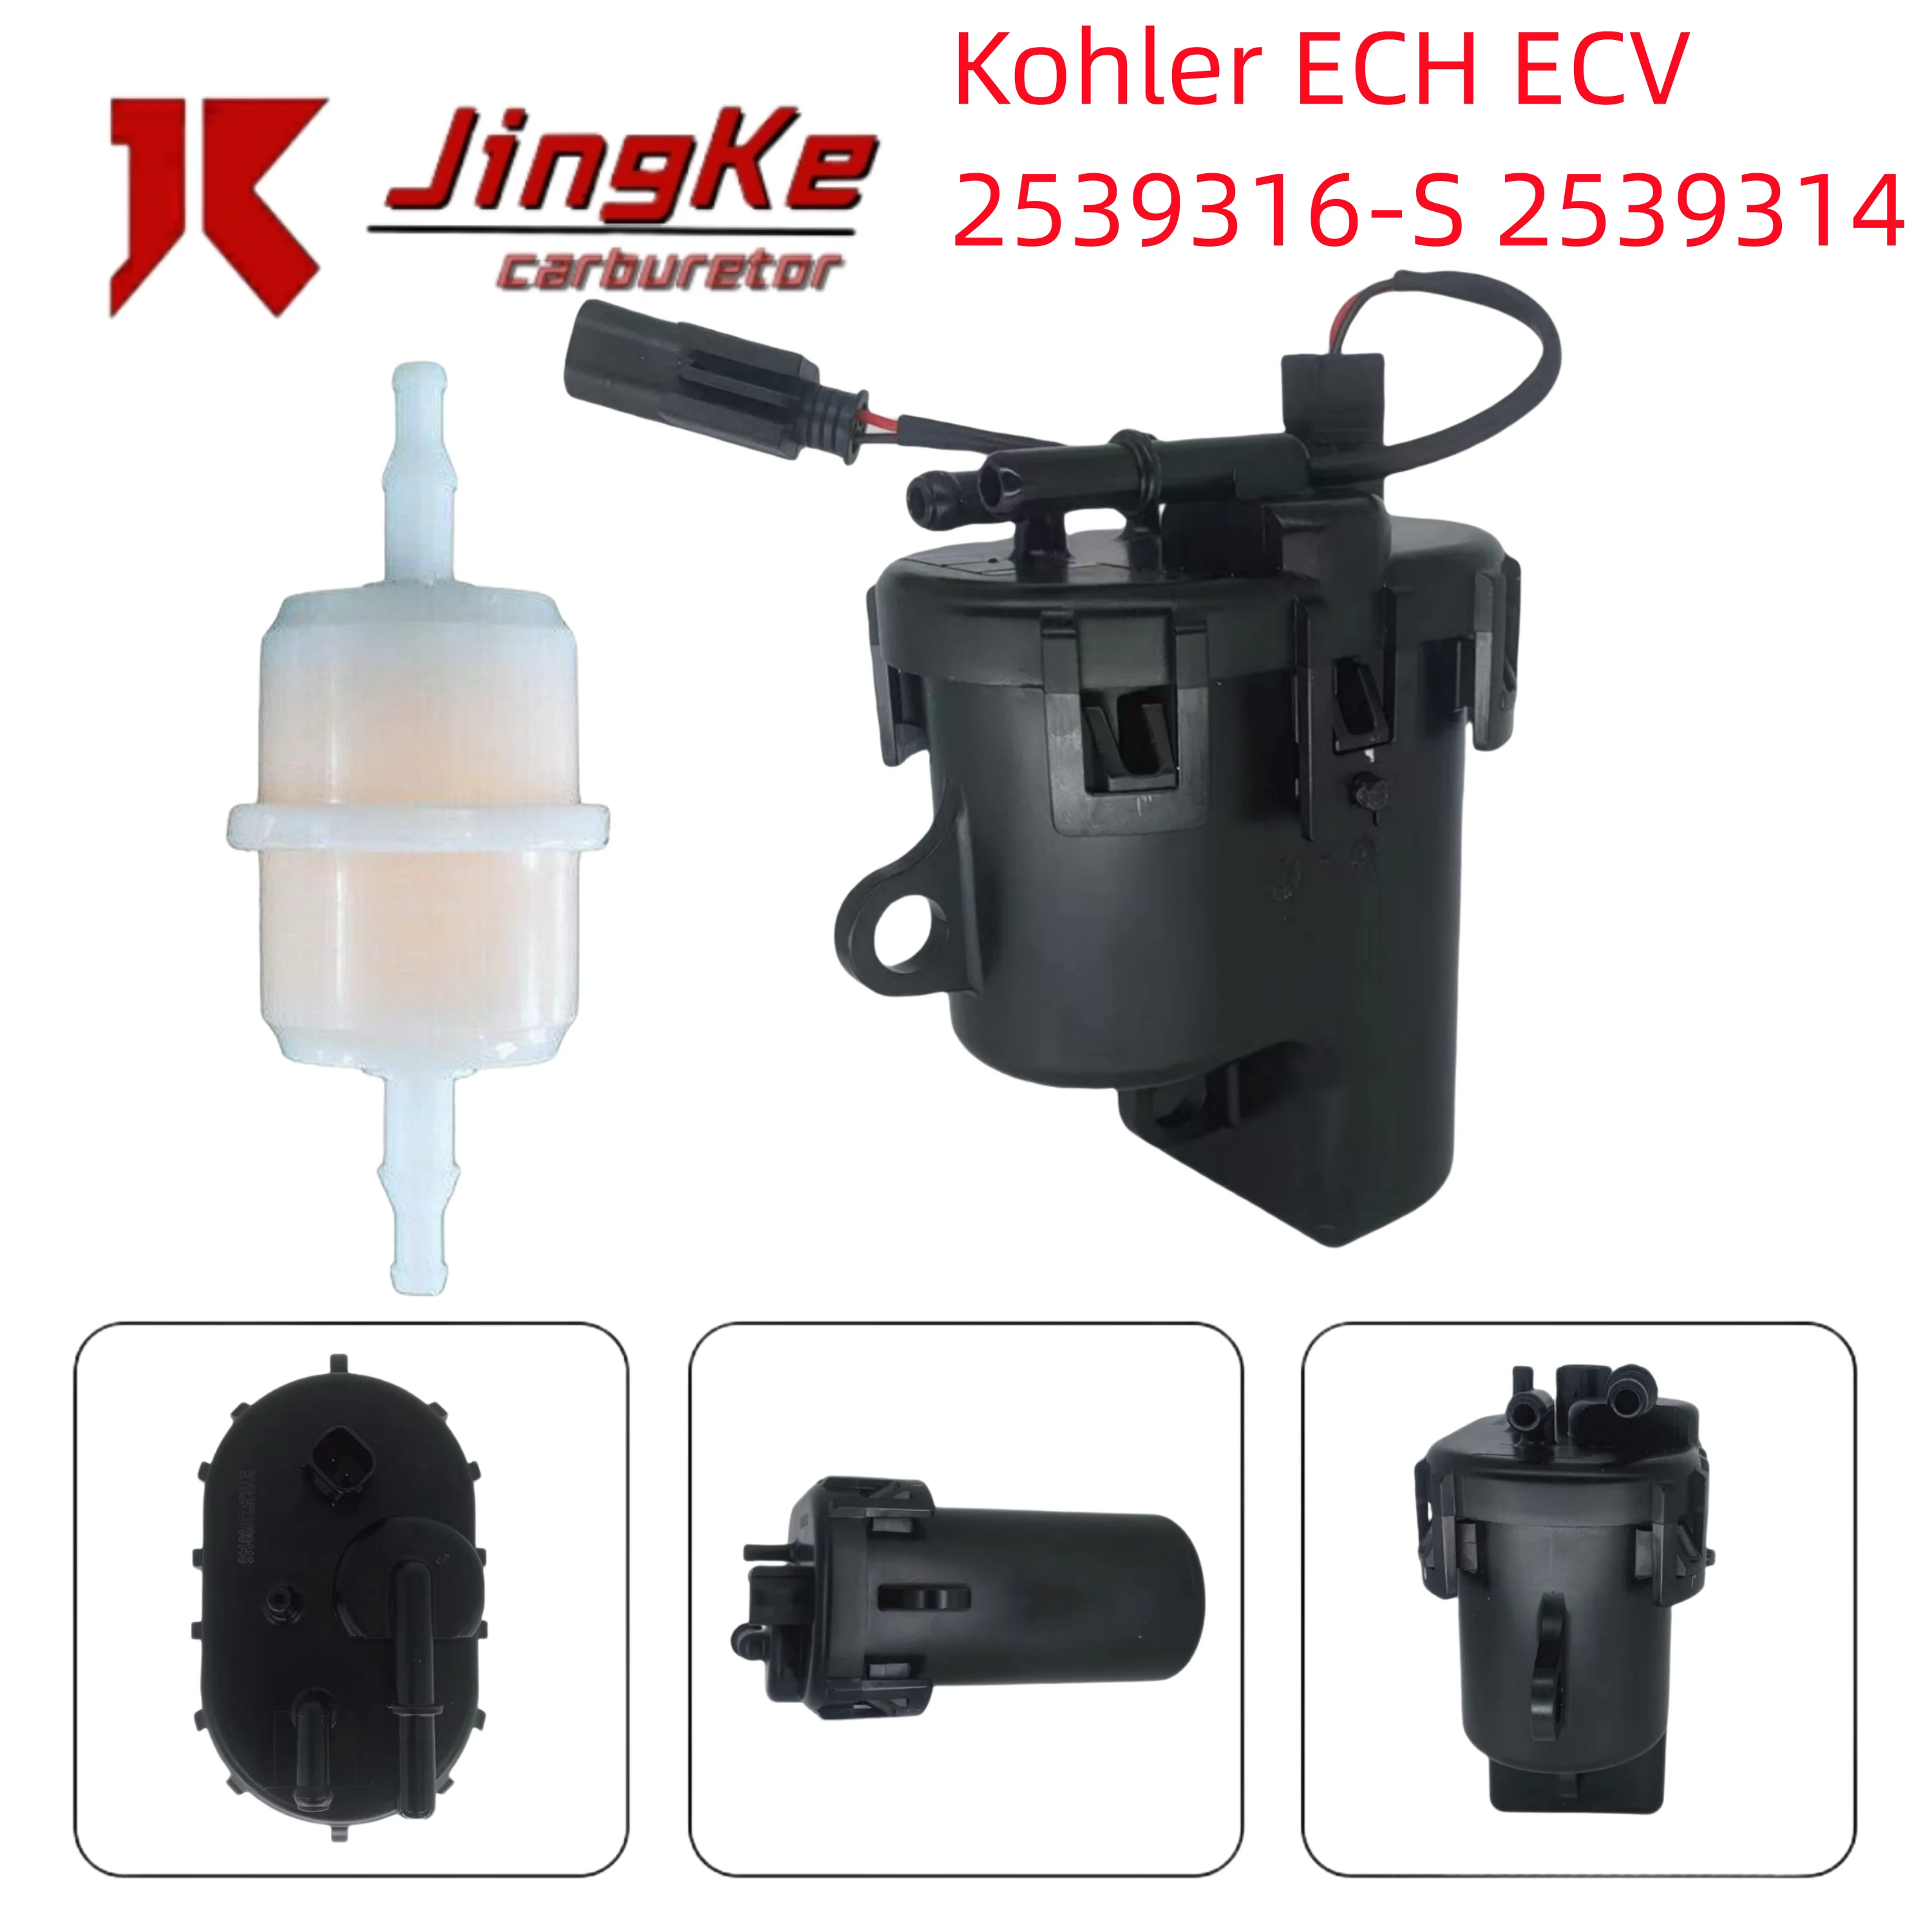 

Oil Pump Kohler ECH ECV 2539316-S 2539314 With dual interface replacement cable Carburetor fuel pump module Module Filter Kit